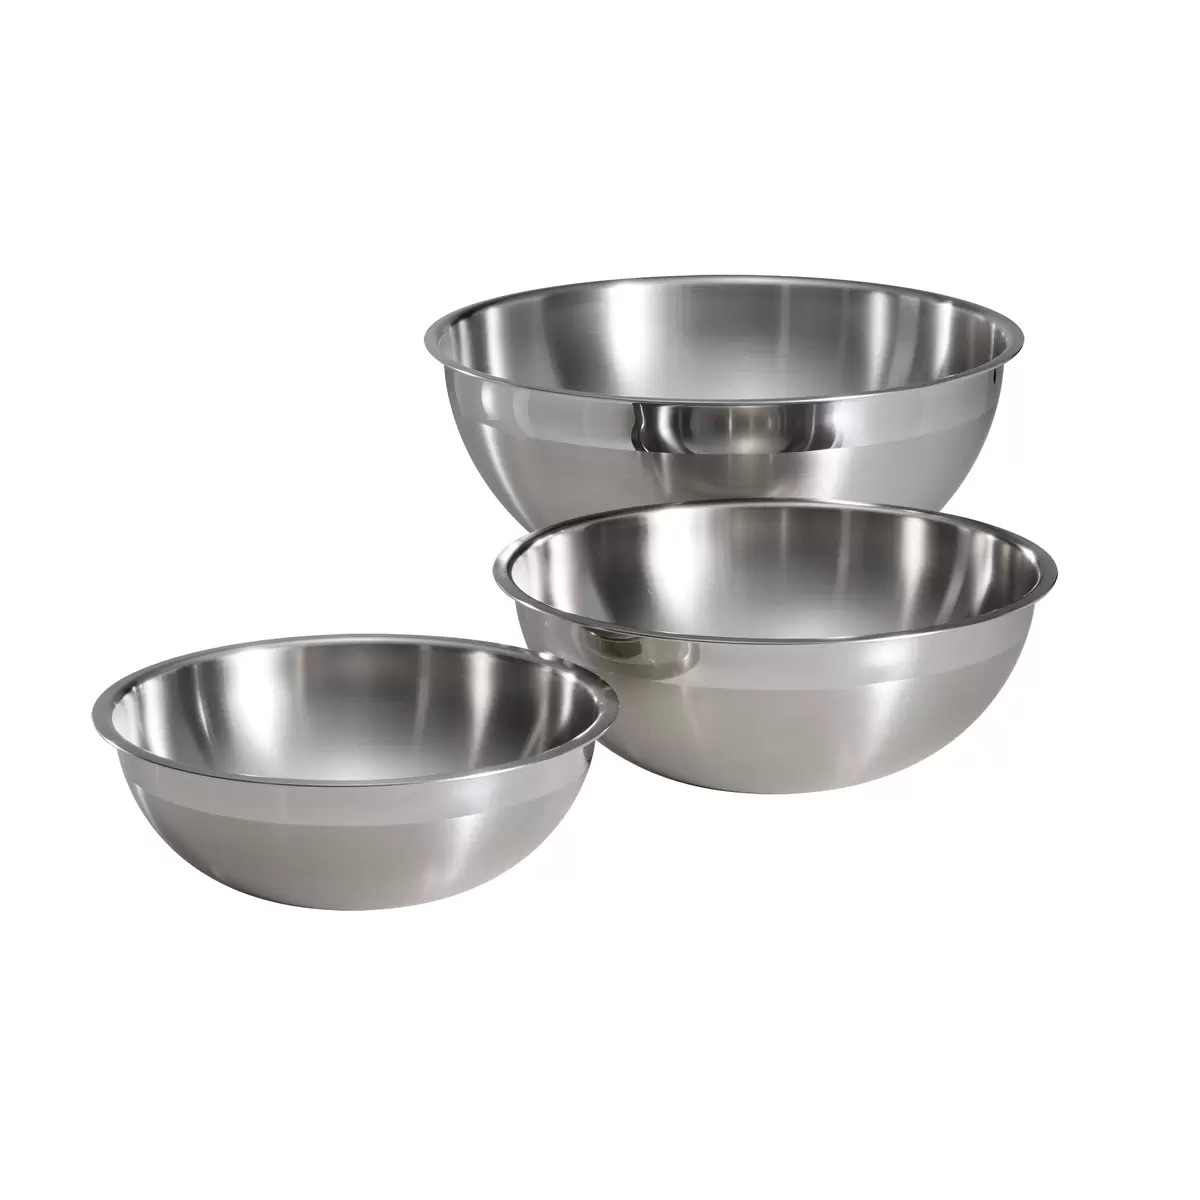 トラモンティーナ ミキシングボウル 3個セット ステンレス製18-10 Tramontina Stainless Steel Mixing bowls